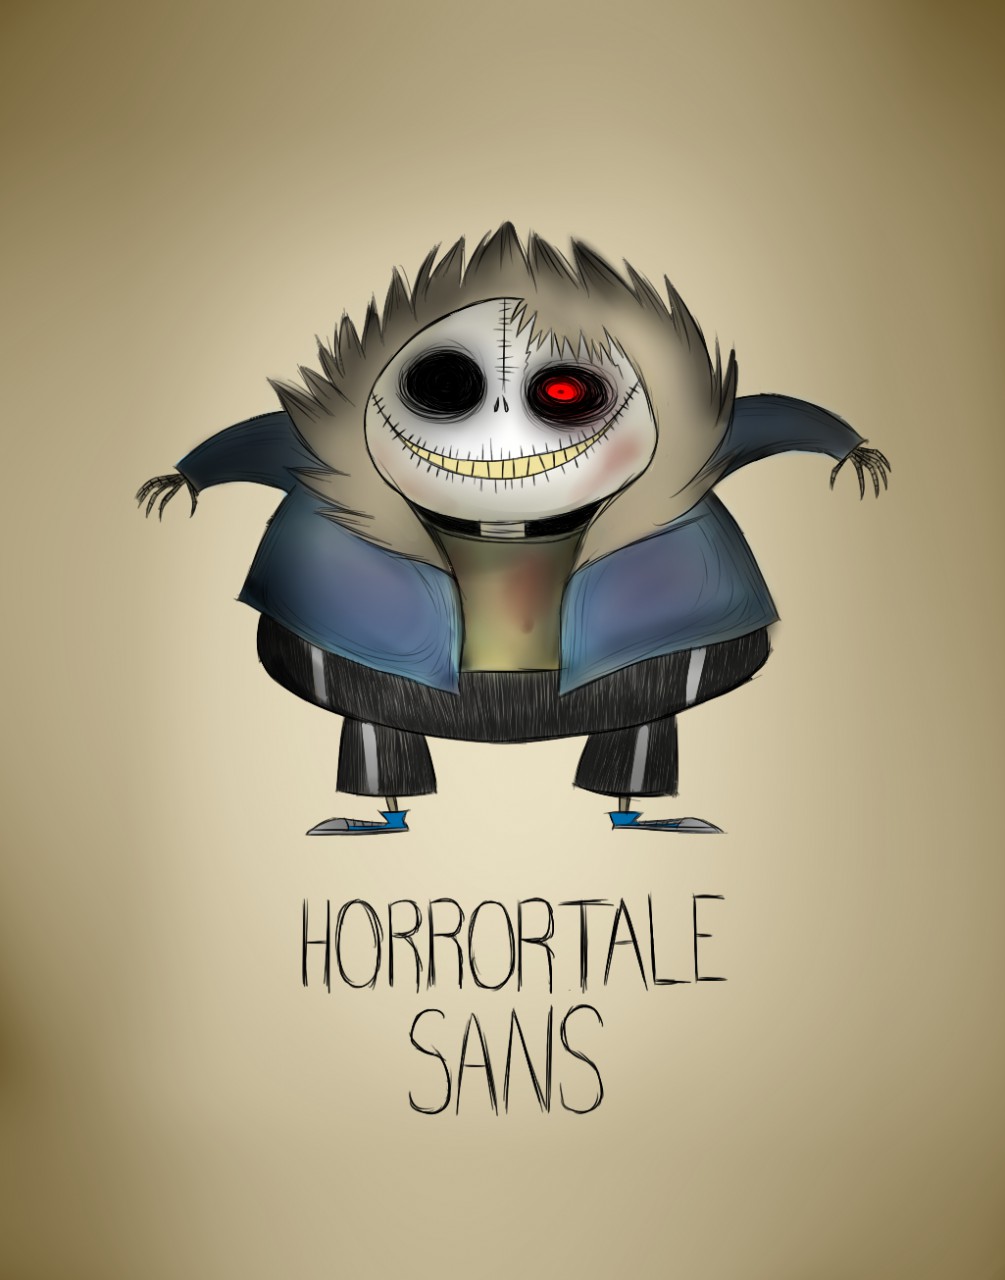 Undertale: Horrortale Sans — Weasyl